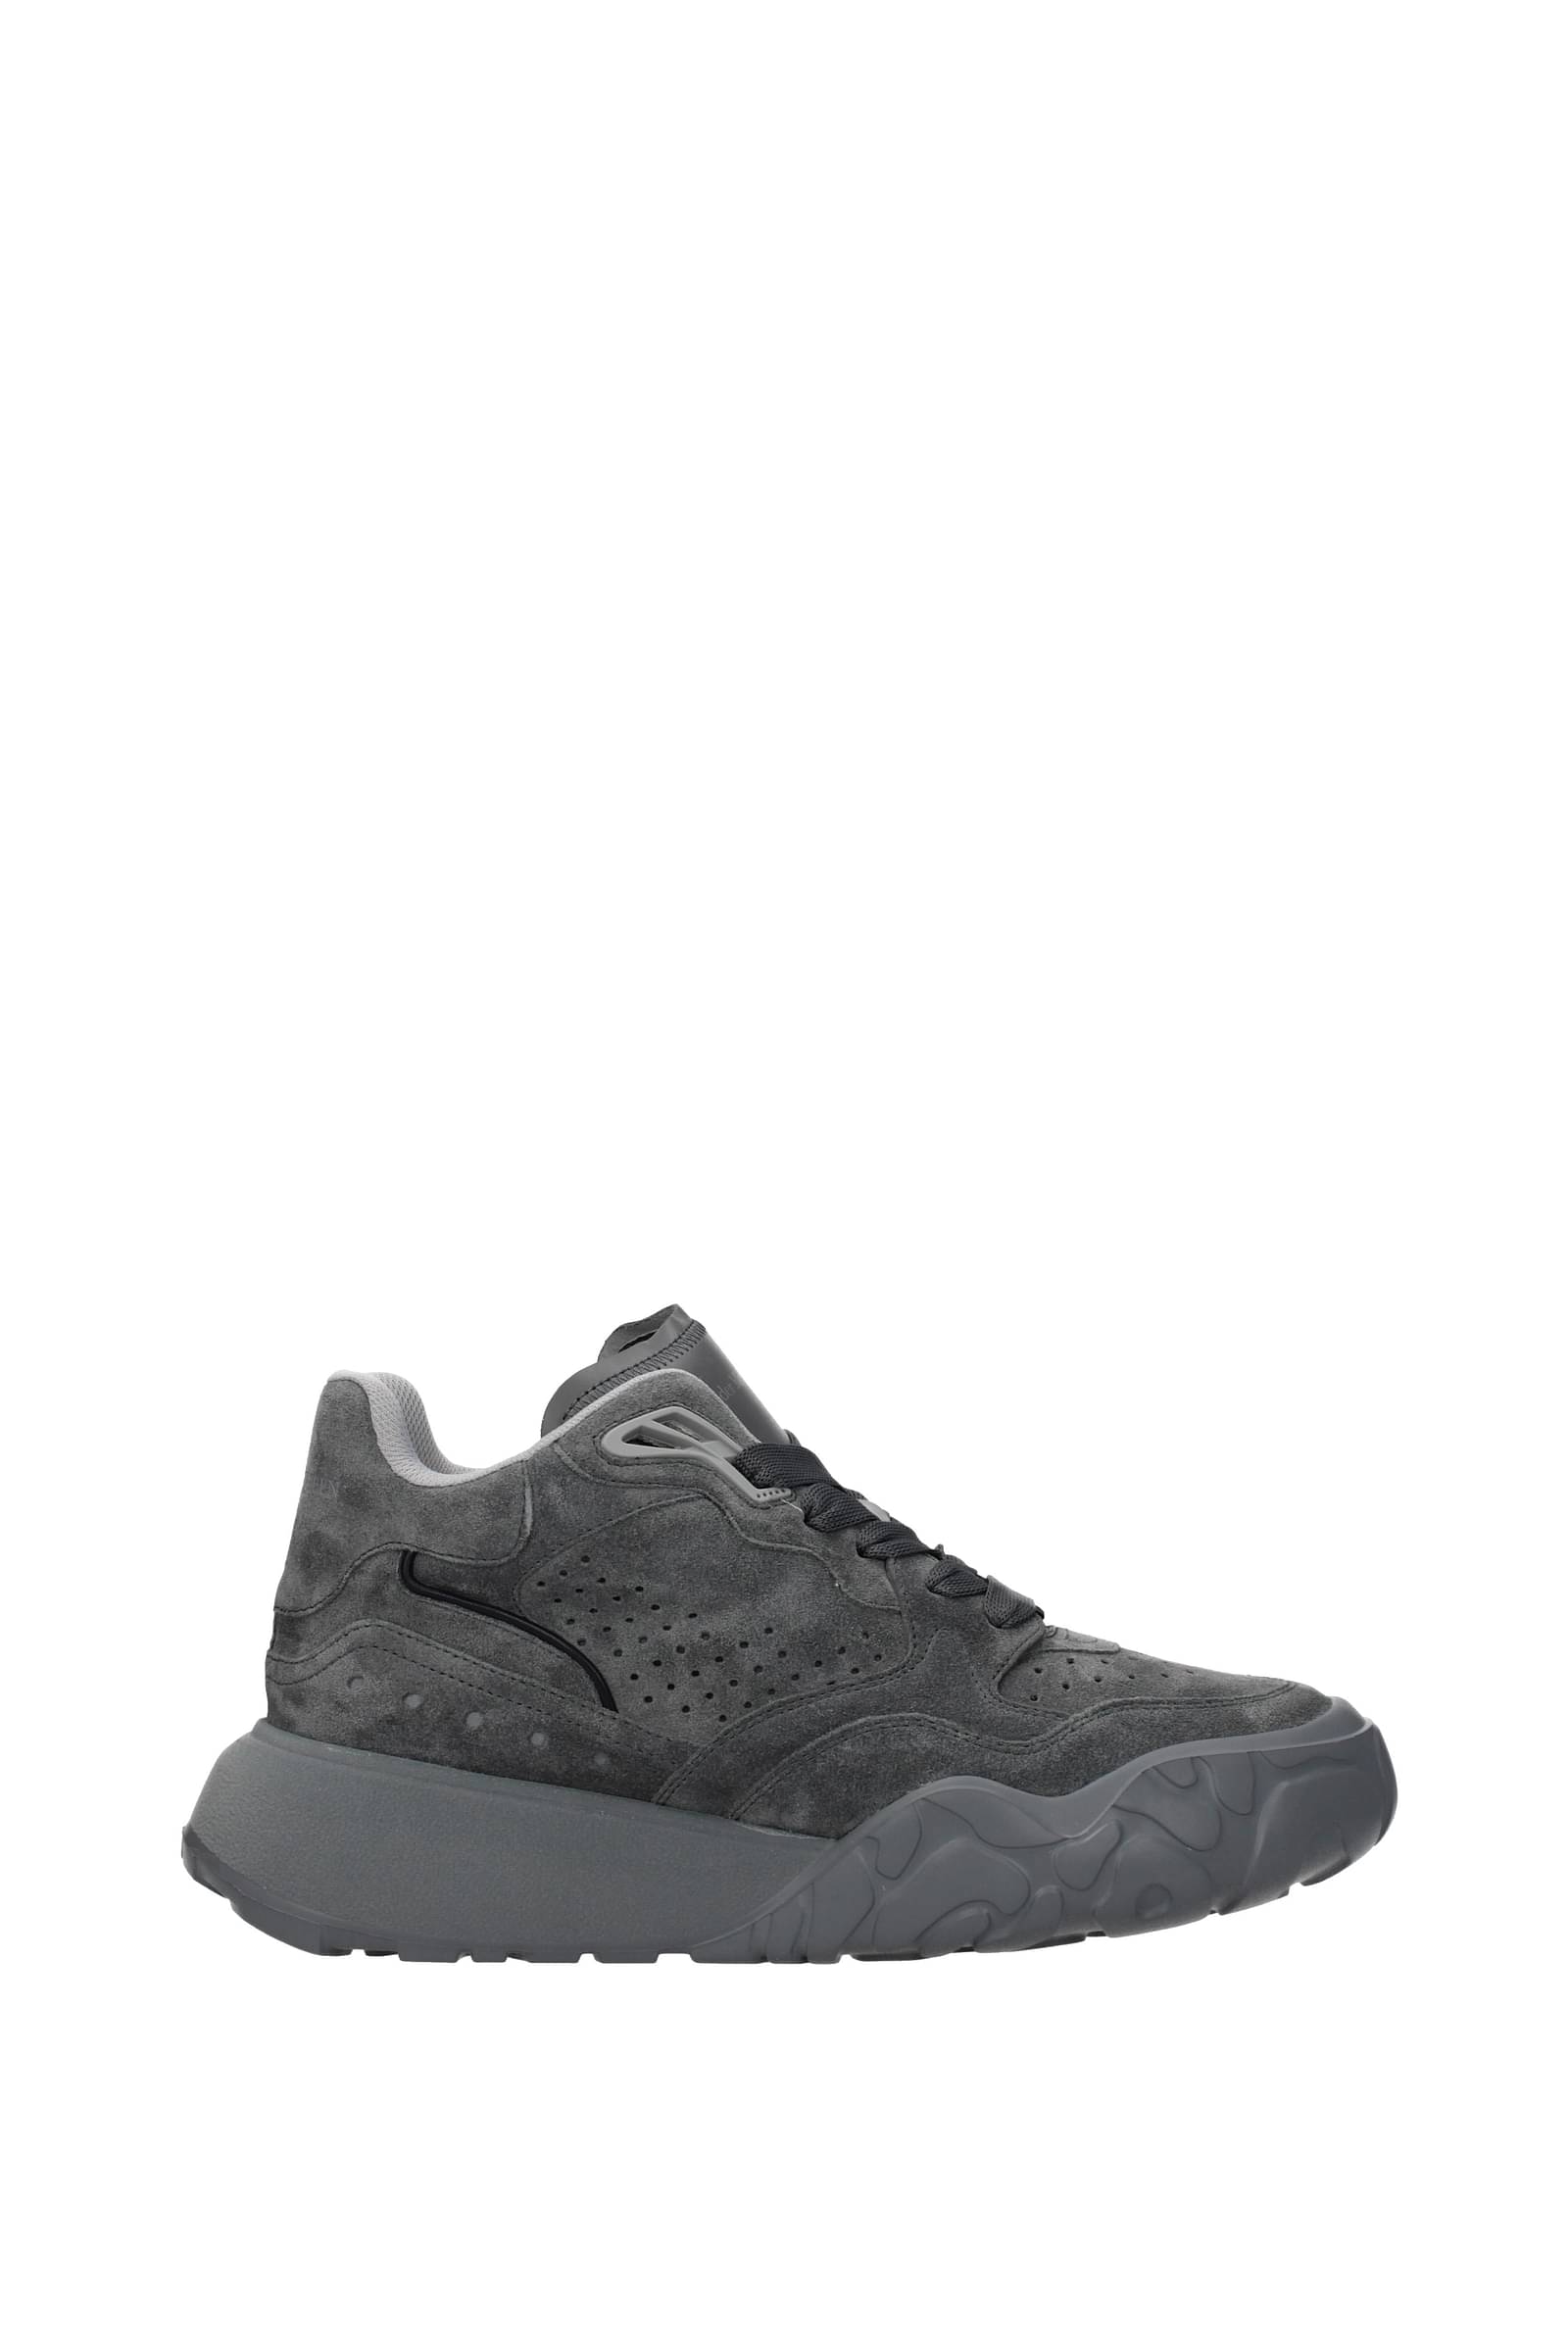 Alexander Mcqueen Suede Sneakers In Grey